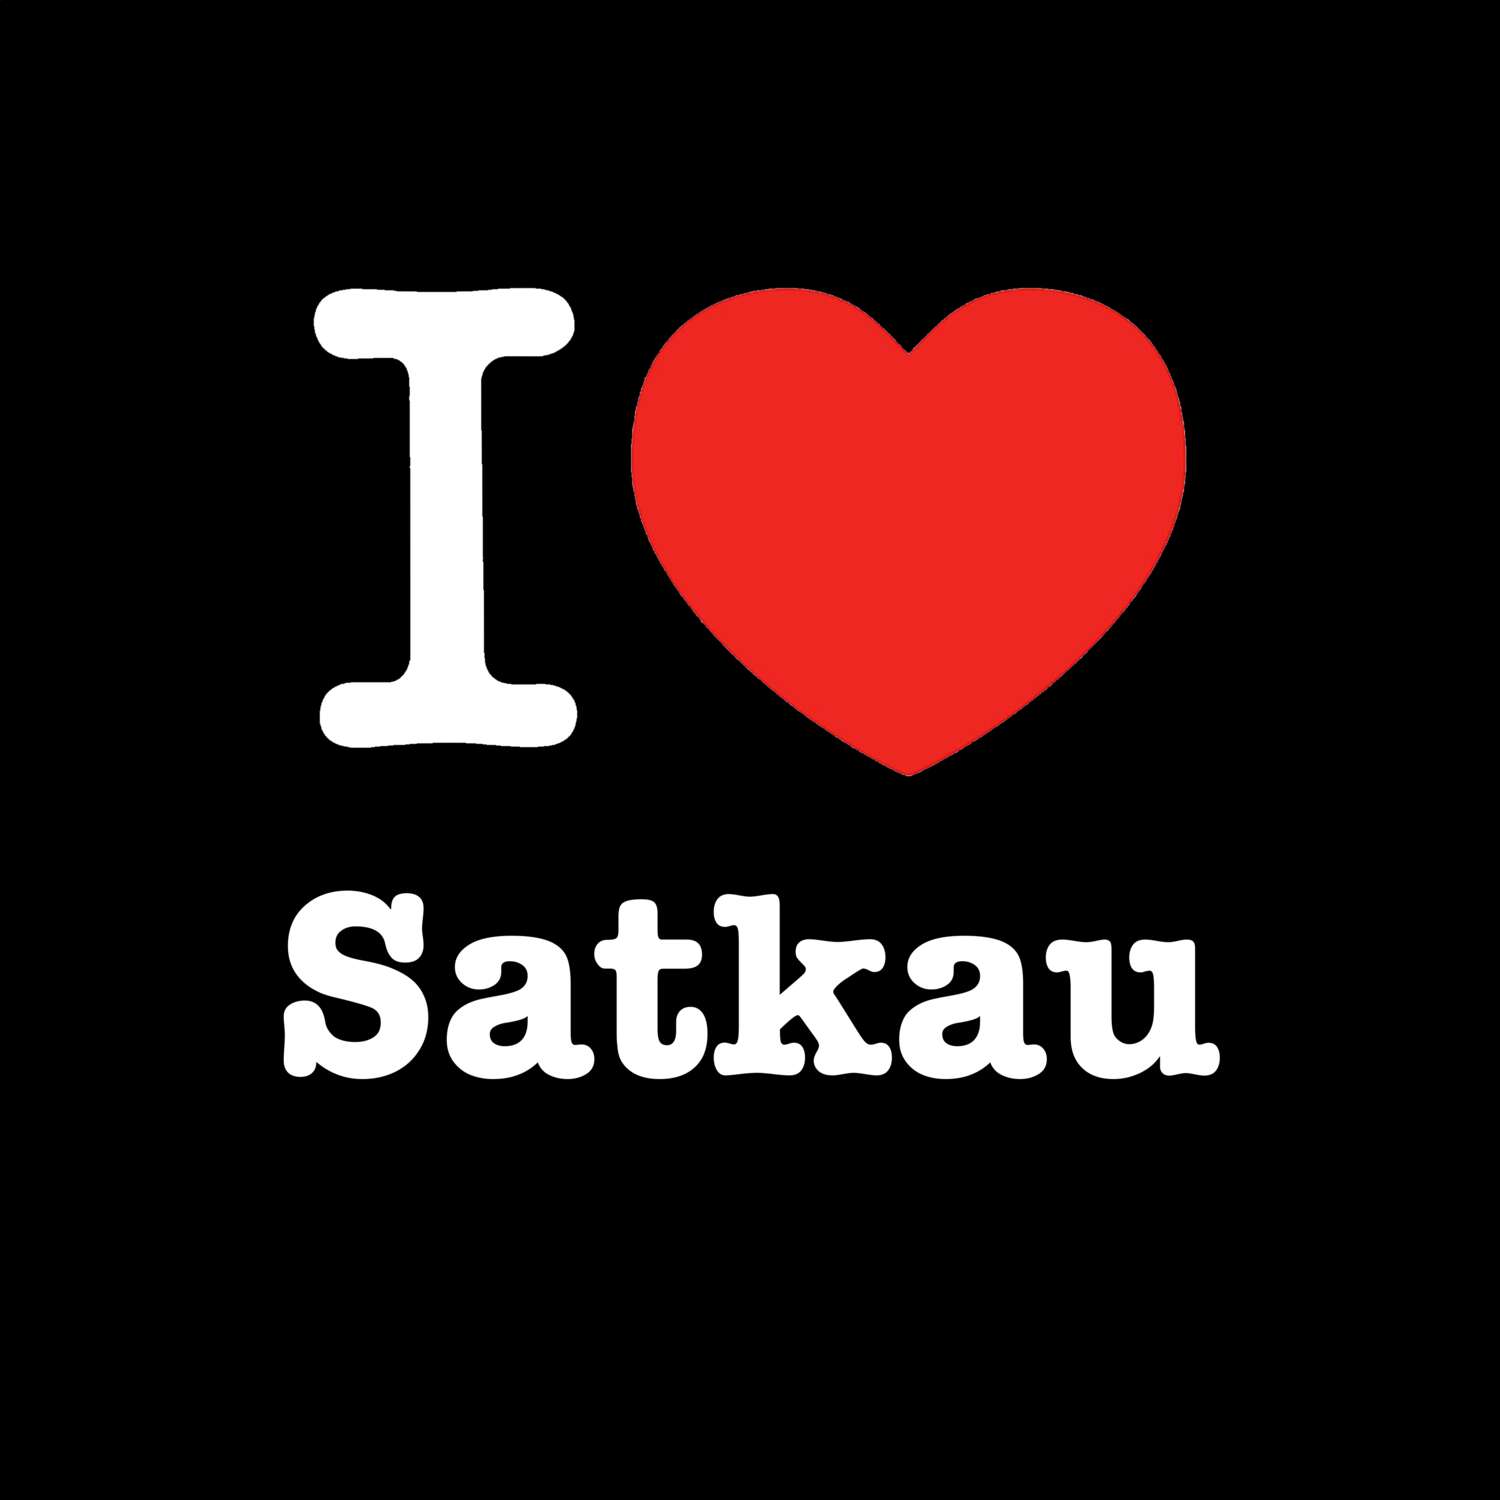 Satkau T-Shirt »I love«